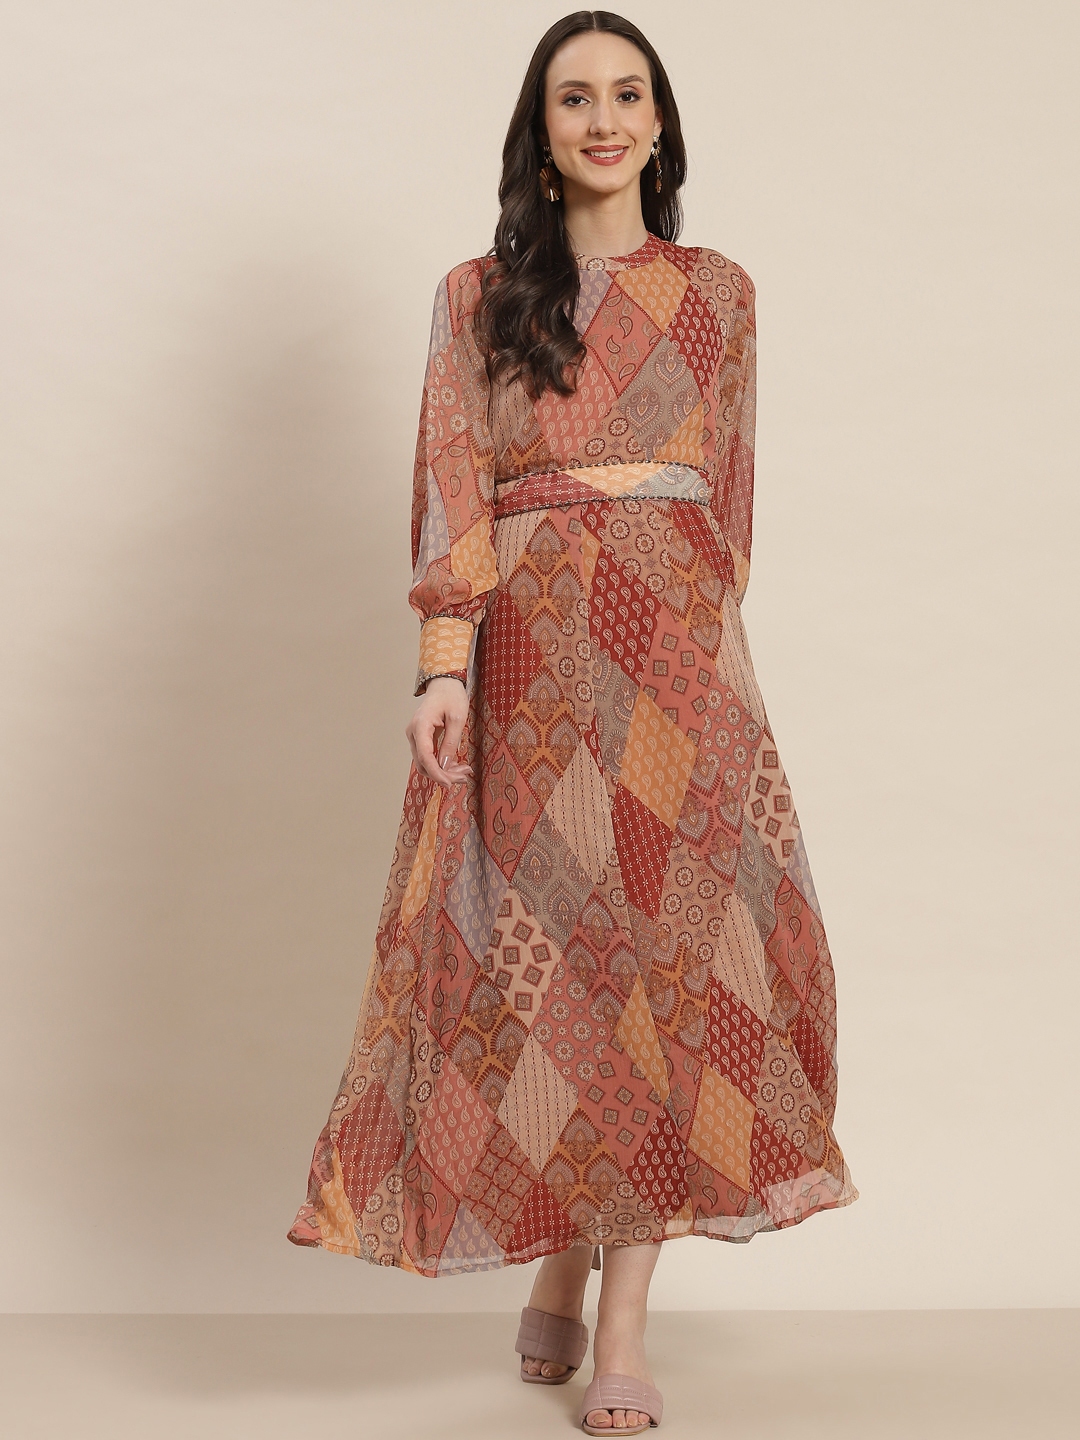 Ethnic Wear for Women  Ethnic Dress for Women : Juniper